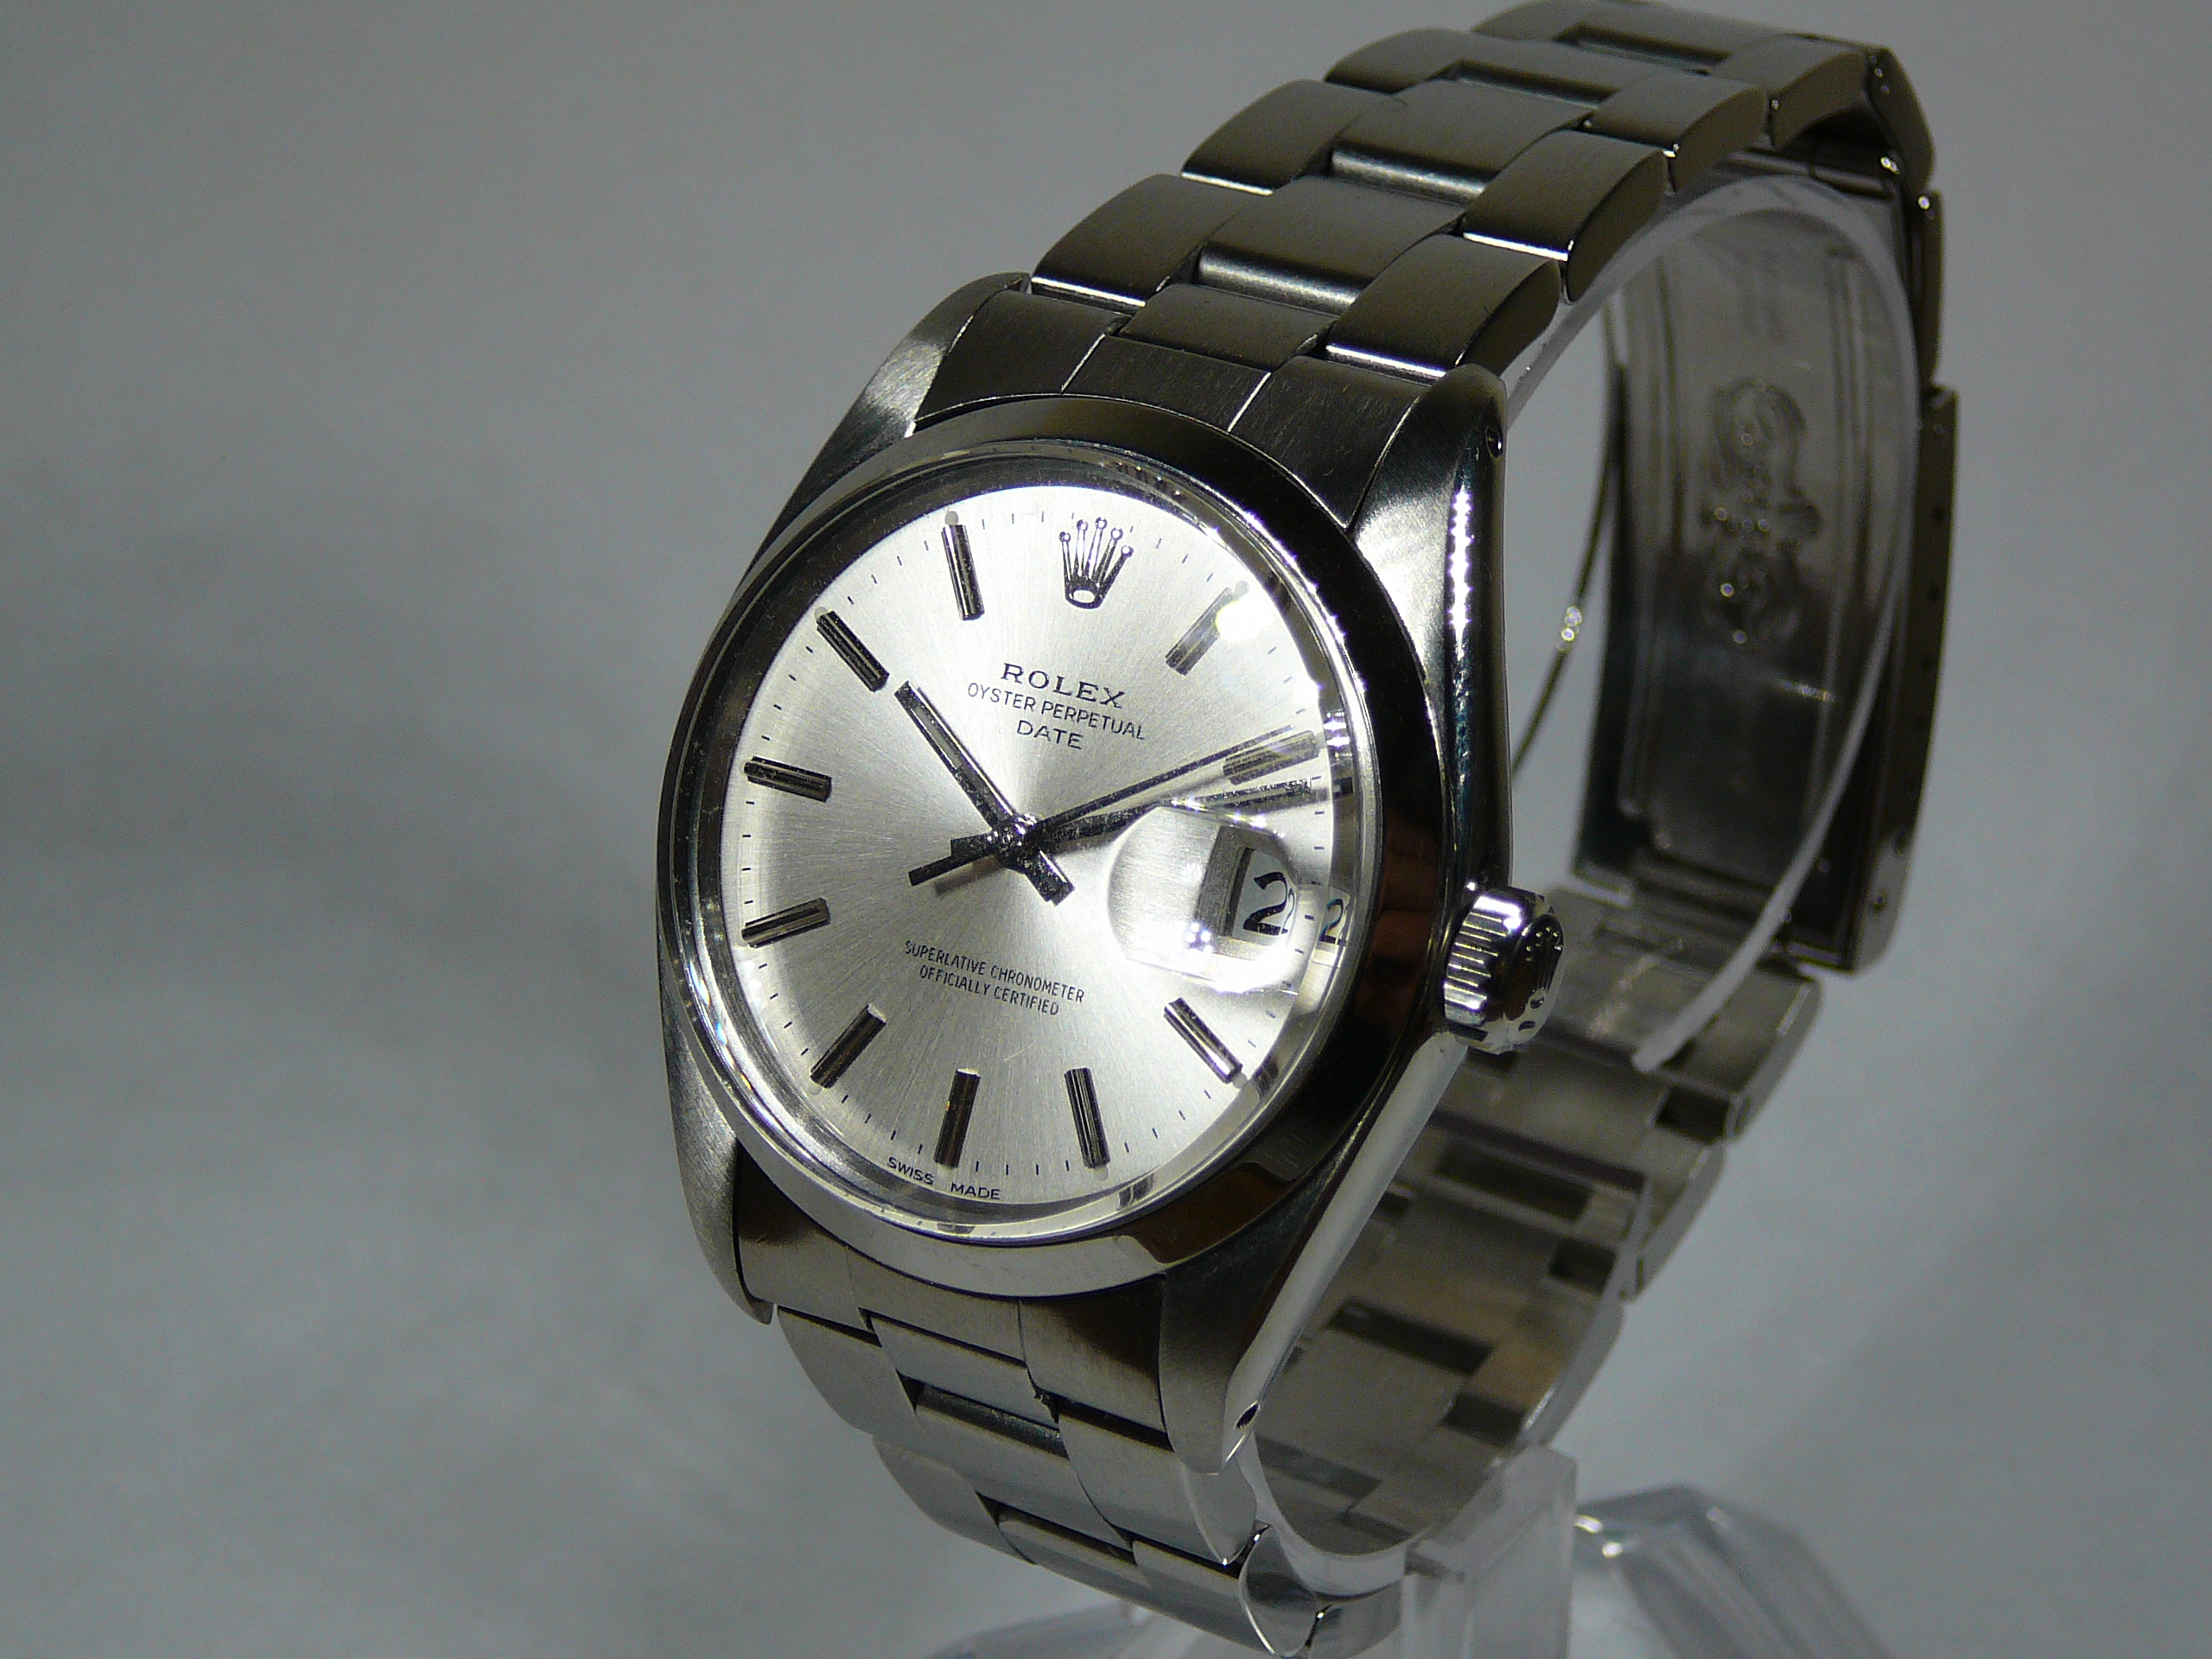 Gents Rolex Wrist Watch - Image 2 of 5